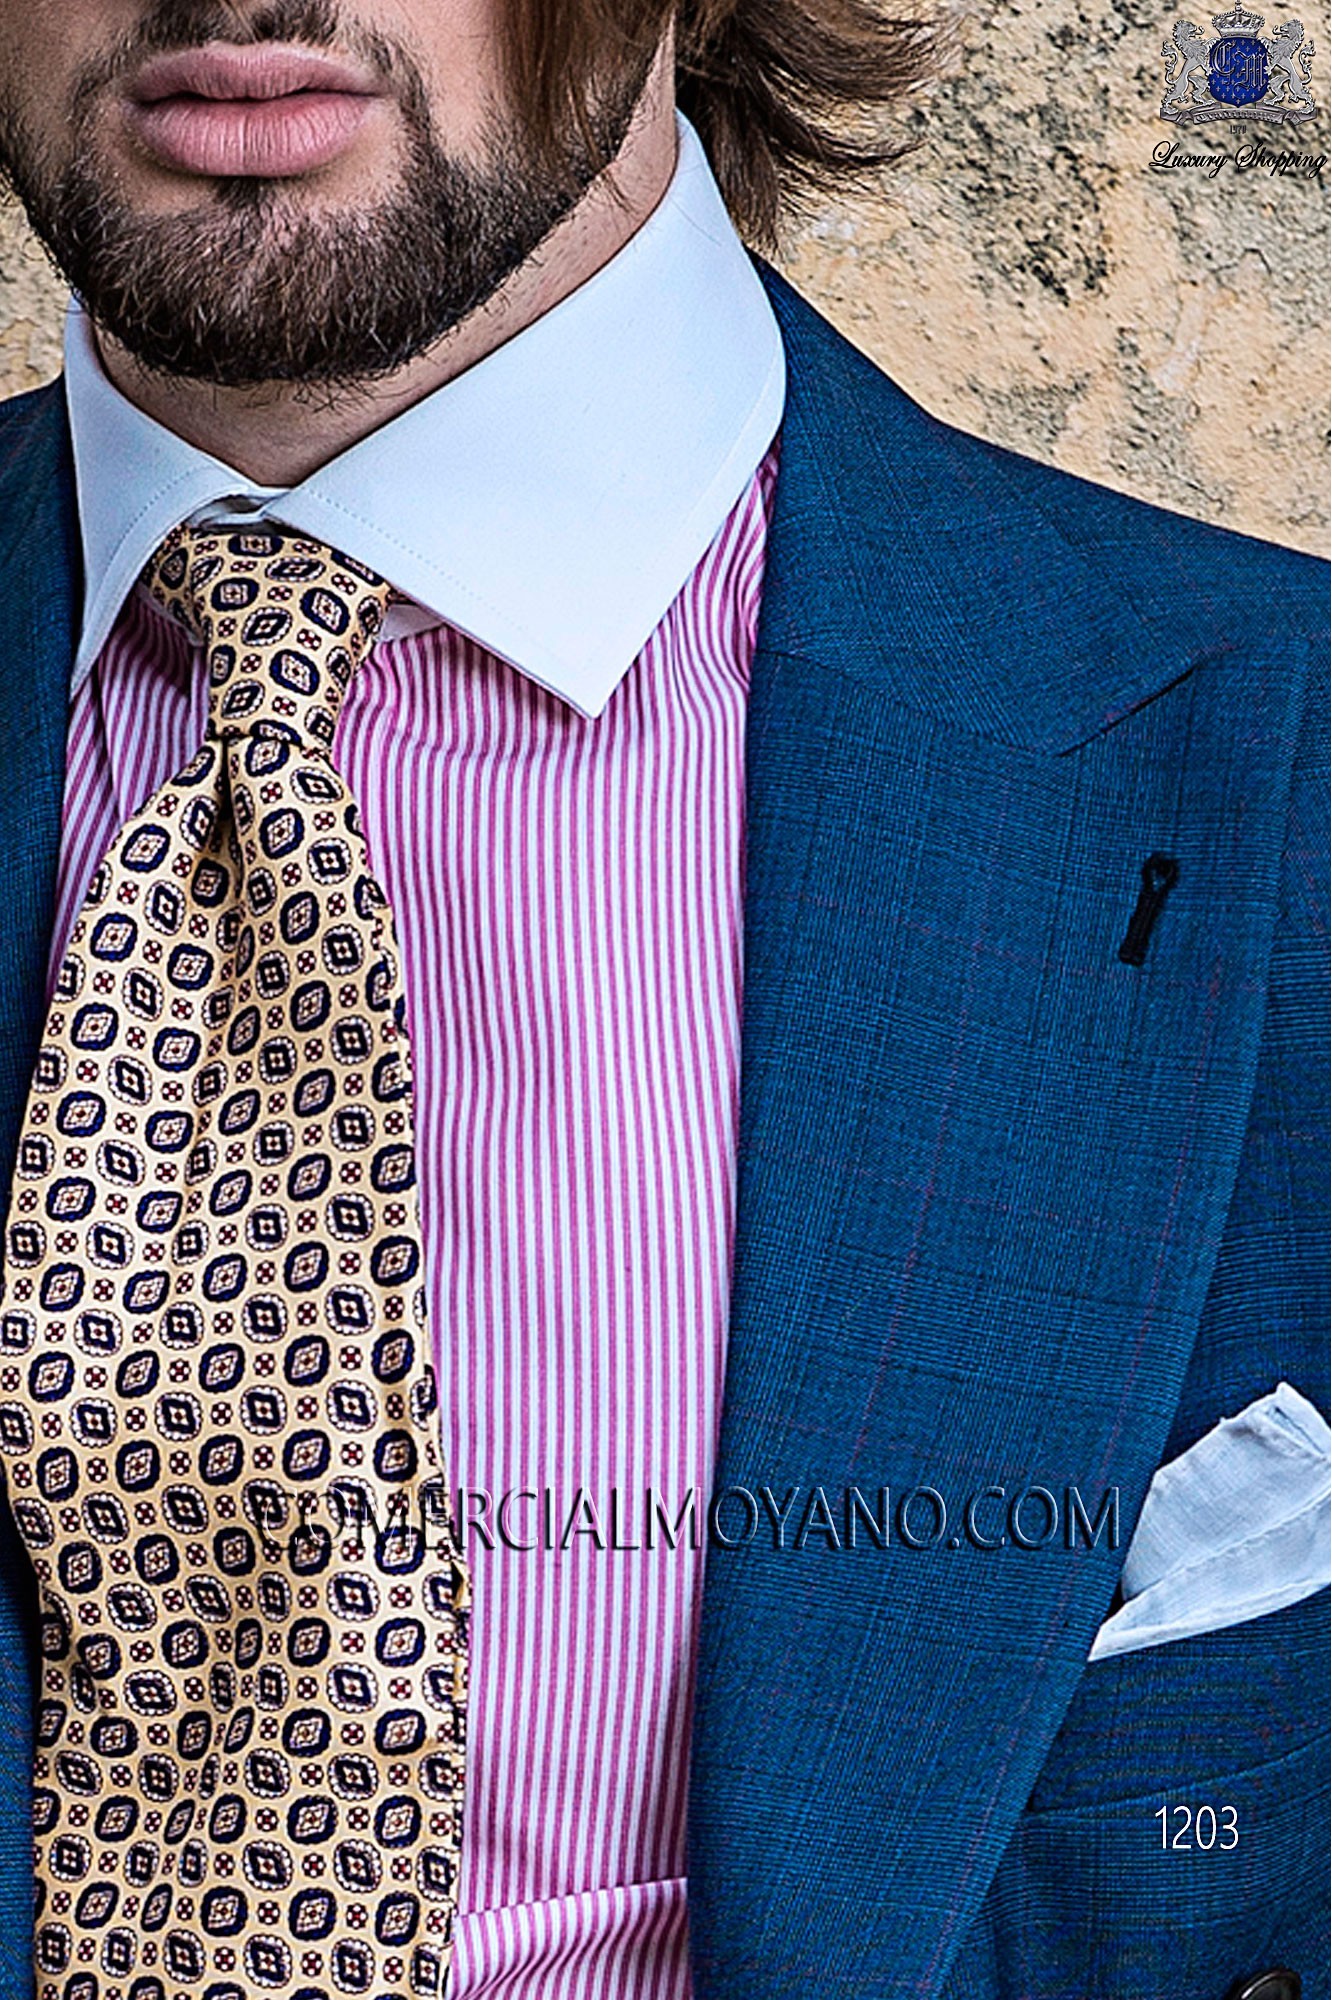 Italian gentleman blue men wedding suit, model: 1203 Mario Moyano Gentleman Collection